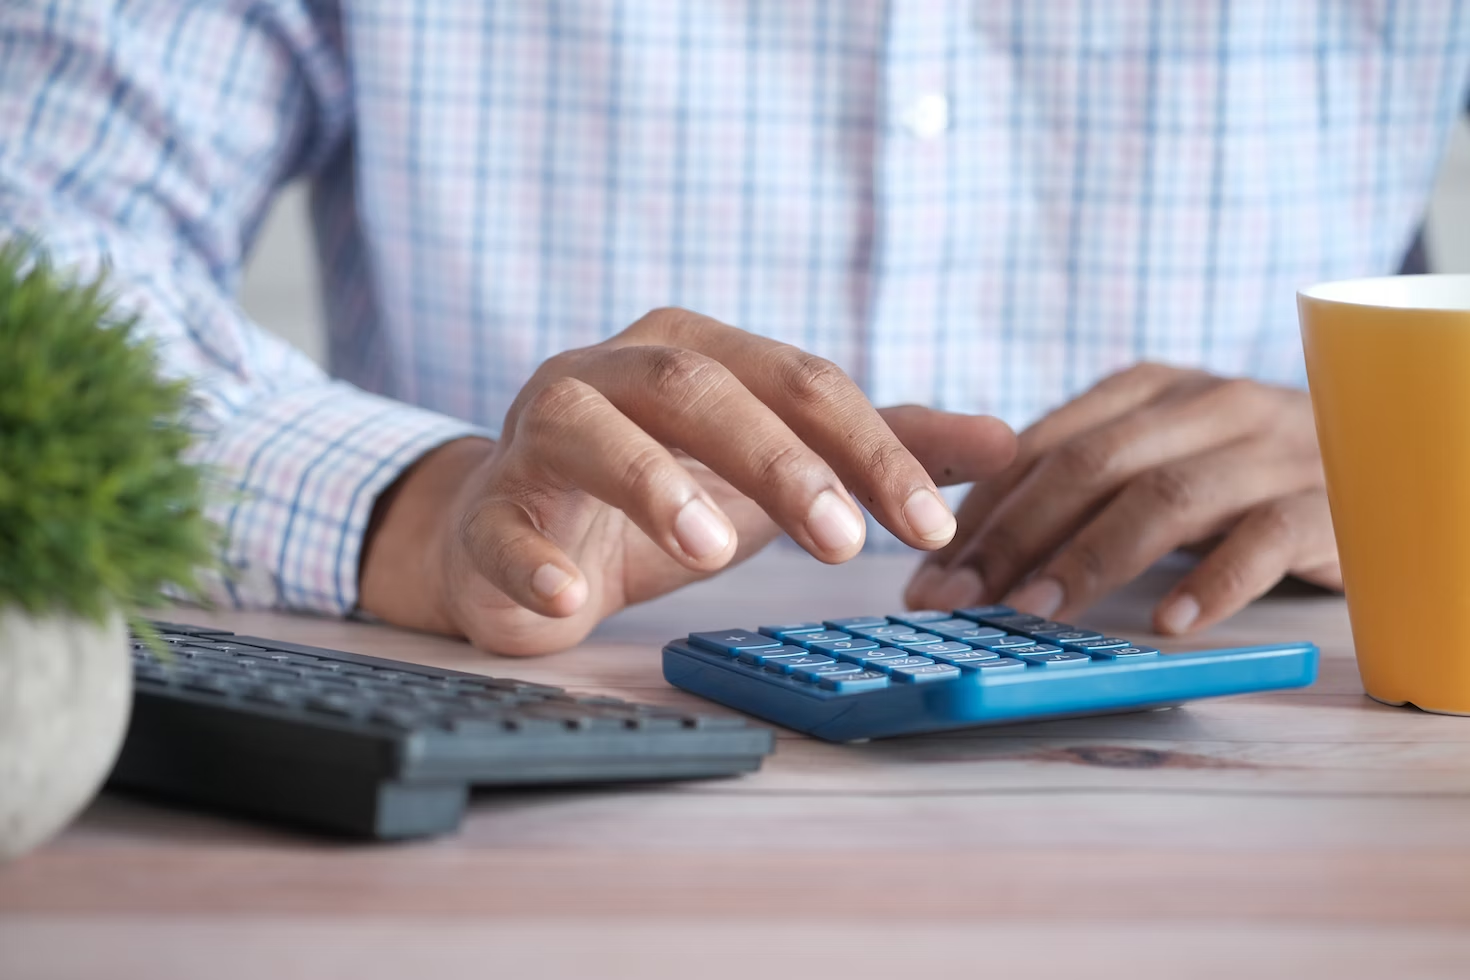 Homme portant une chemise à carreaux blancs, bleux et roses et tapant sur une calculatrice bleue.